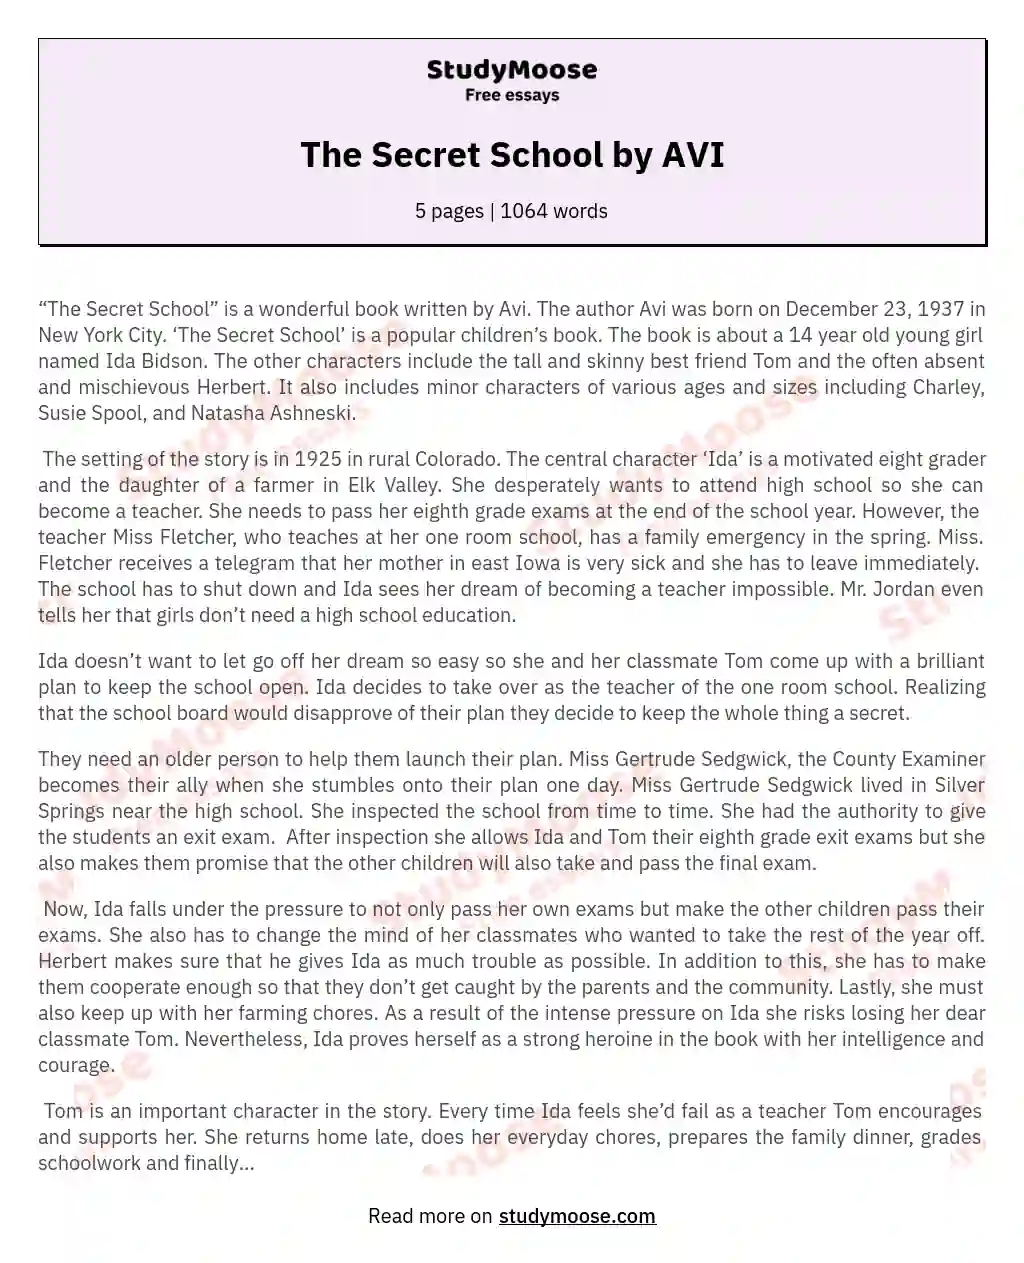 The Secret School by AVI essay